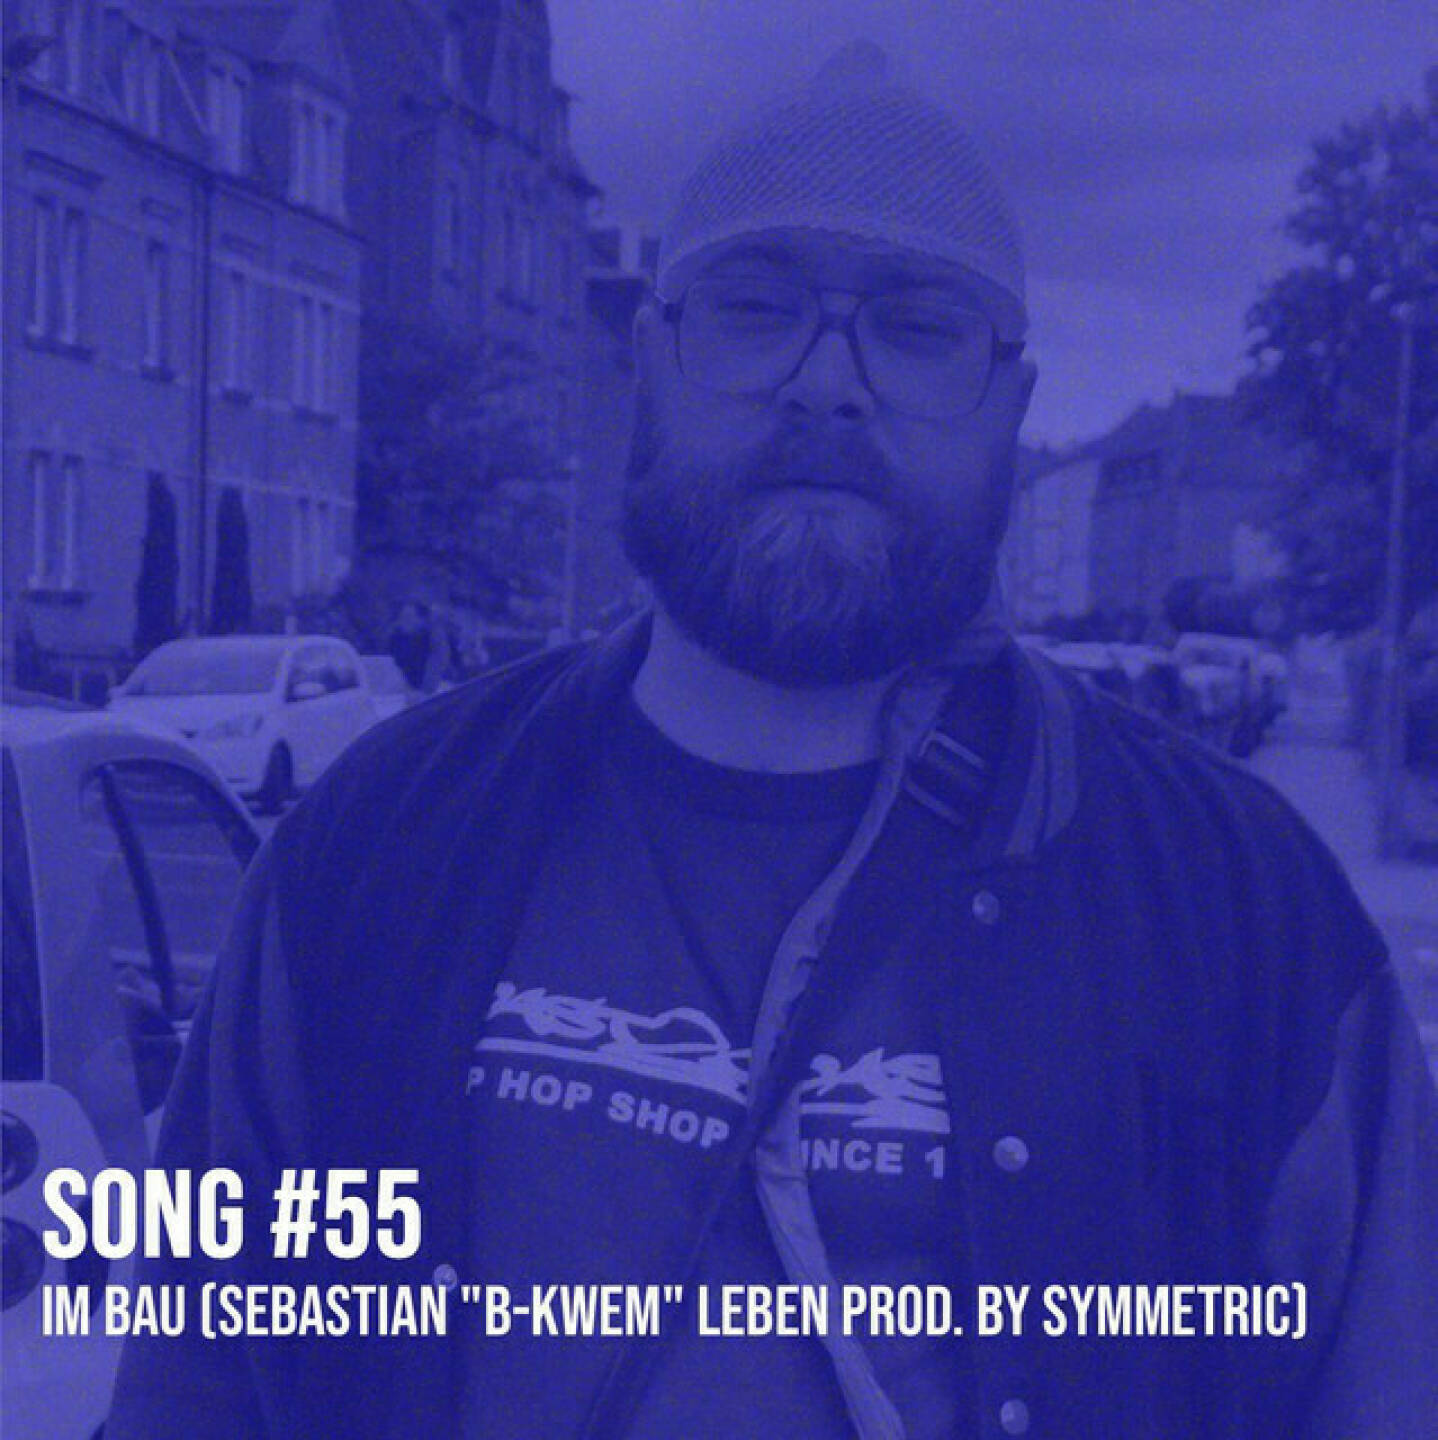 https://open.spotify.com/episode/0Ij442fnQxVbo7nIo7kMFe
Song #55: Im Bau (Sebastian B-Kwem Leben prod. by Symmetric) - <p>Im Bau ist ein Song von Börsenradio-Legende Sebastian Leben, produziert von Symmetric. Am 21. Juni geht eine Börsepeople-Folge mit Sebastian live, wir sprechen dort über eine tolle Zeit als Kollegen, über den starken Podcast &#34;Broke und Broker&#34;, aber auch ganz offen über eine lebensbedrohliche Erkrankung, mit der Sebastian offen und vor allem erfolgreich umgeht. Statistisch gesehen haben sich seine Chancen wieder deutlich verbessert. Aber hier mal &#34;Im Bau&#34;.<br/><br/>Weiterer Song von Sebastian:  Probleme <a href=https://audio-cd.at/page/playlist/1727 target=_blank>https://audio-cd.at/page/playlist/1727</a><br/><br/>Sebastian Börsepeople ab 21.6.: <a href=http://www.audio-cd.at/people target=_blank>http://www.audio-cd.at/people</a> .<br/><br/><a href=https://brokeundbroker.de target=_blank>https://brokeundbroker.de</a><br/><br/>Er spricht das &#34;Homey B&#34; in meinem täglichen Jingle der Wiener Börse Party: <a href=http://www.audio-cd.at/wienerboerseplausch target=_blank>http://www.audio-cd.at/wienerboerseplausch</a><br/><br/>Er hat mein &#34;Stadtsong&#34;-Refrain cooler gemacht: <a href=https://audio-cd.at/page/playlist/1985 target=_blank>https://audio-cd.at/page/playlist/1985</a><br/><br/>- mehr Songs: <a href=https://www.audio-cd.at/songs target=_blank>https://www.audio-cd.at/songs</a><br/><br/>- Playlist mit ein paar unserer Songs: <a href=https://open.spotify.com/playlist/63tRnVh3aIOlhrdUKvb4P target=_blank>https://open.spotify.com/playlist/63tRnVh3aIOlhrdUKvb4P</a><br/><br/>Bewertungen bei Apple (oder auch Spotify) machen mir Freude: <a href=http://www.audio-cd.at/apple target=_blank>http://www.audio-cd.at/apple</a> <a href=http://www.audio-cd.at/spotify target=_blank>http://www.audio-cd.at/spotify</a></p>